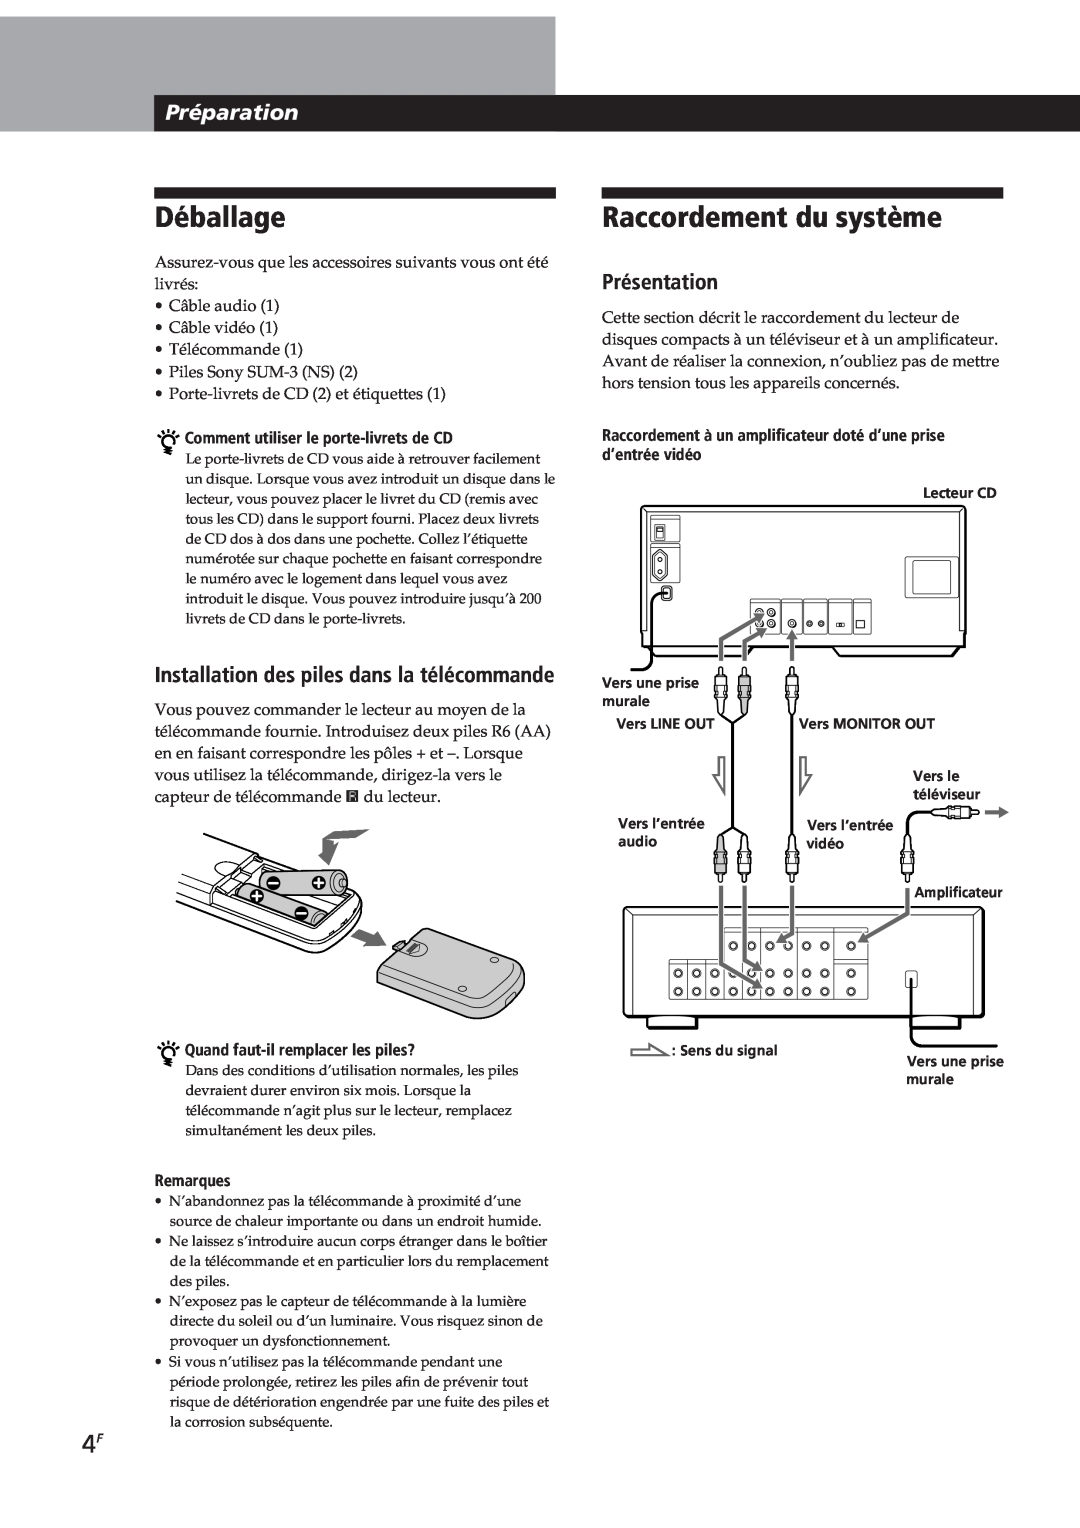 Sony CDP-CX270 Déballage, Raccordement du système, Préparation, Présentation, Installation des piles dans la télécommande 